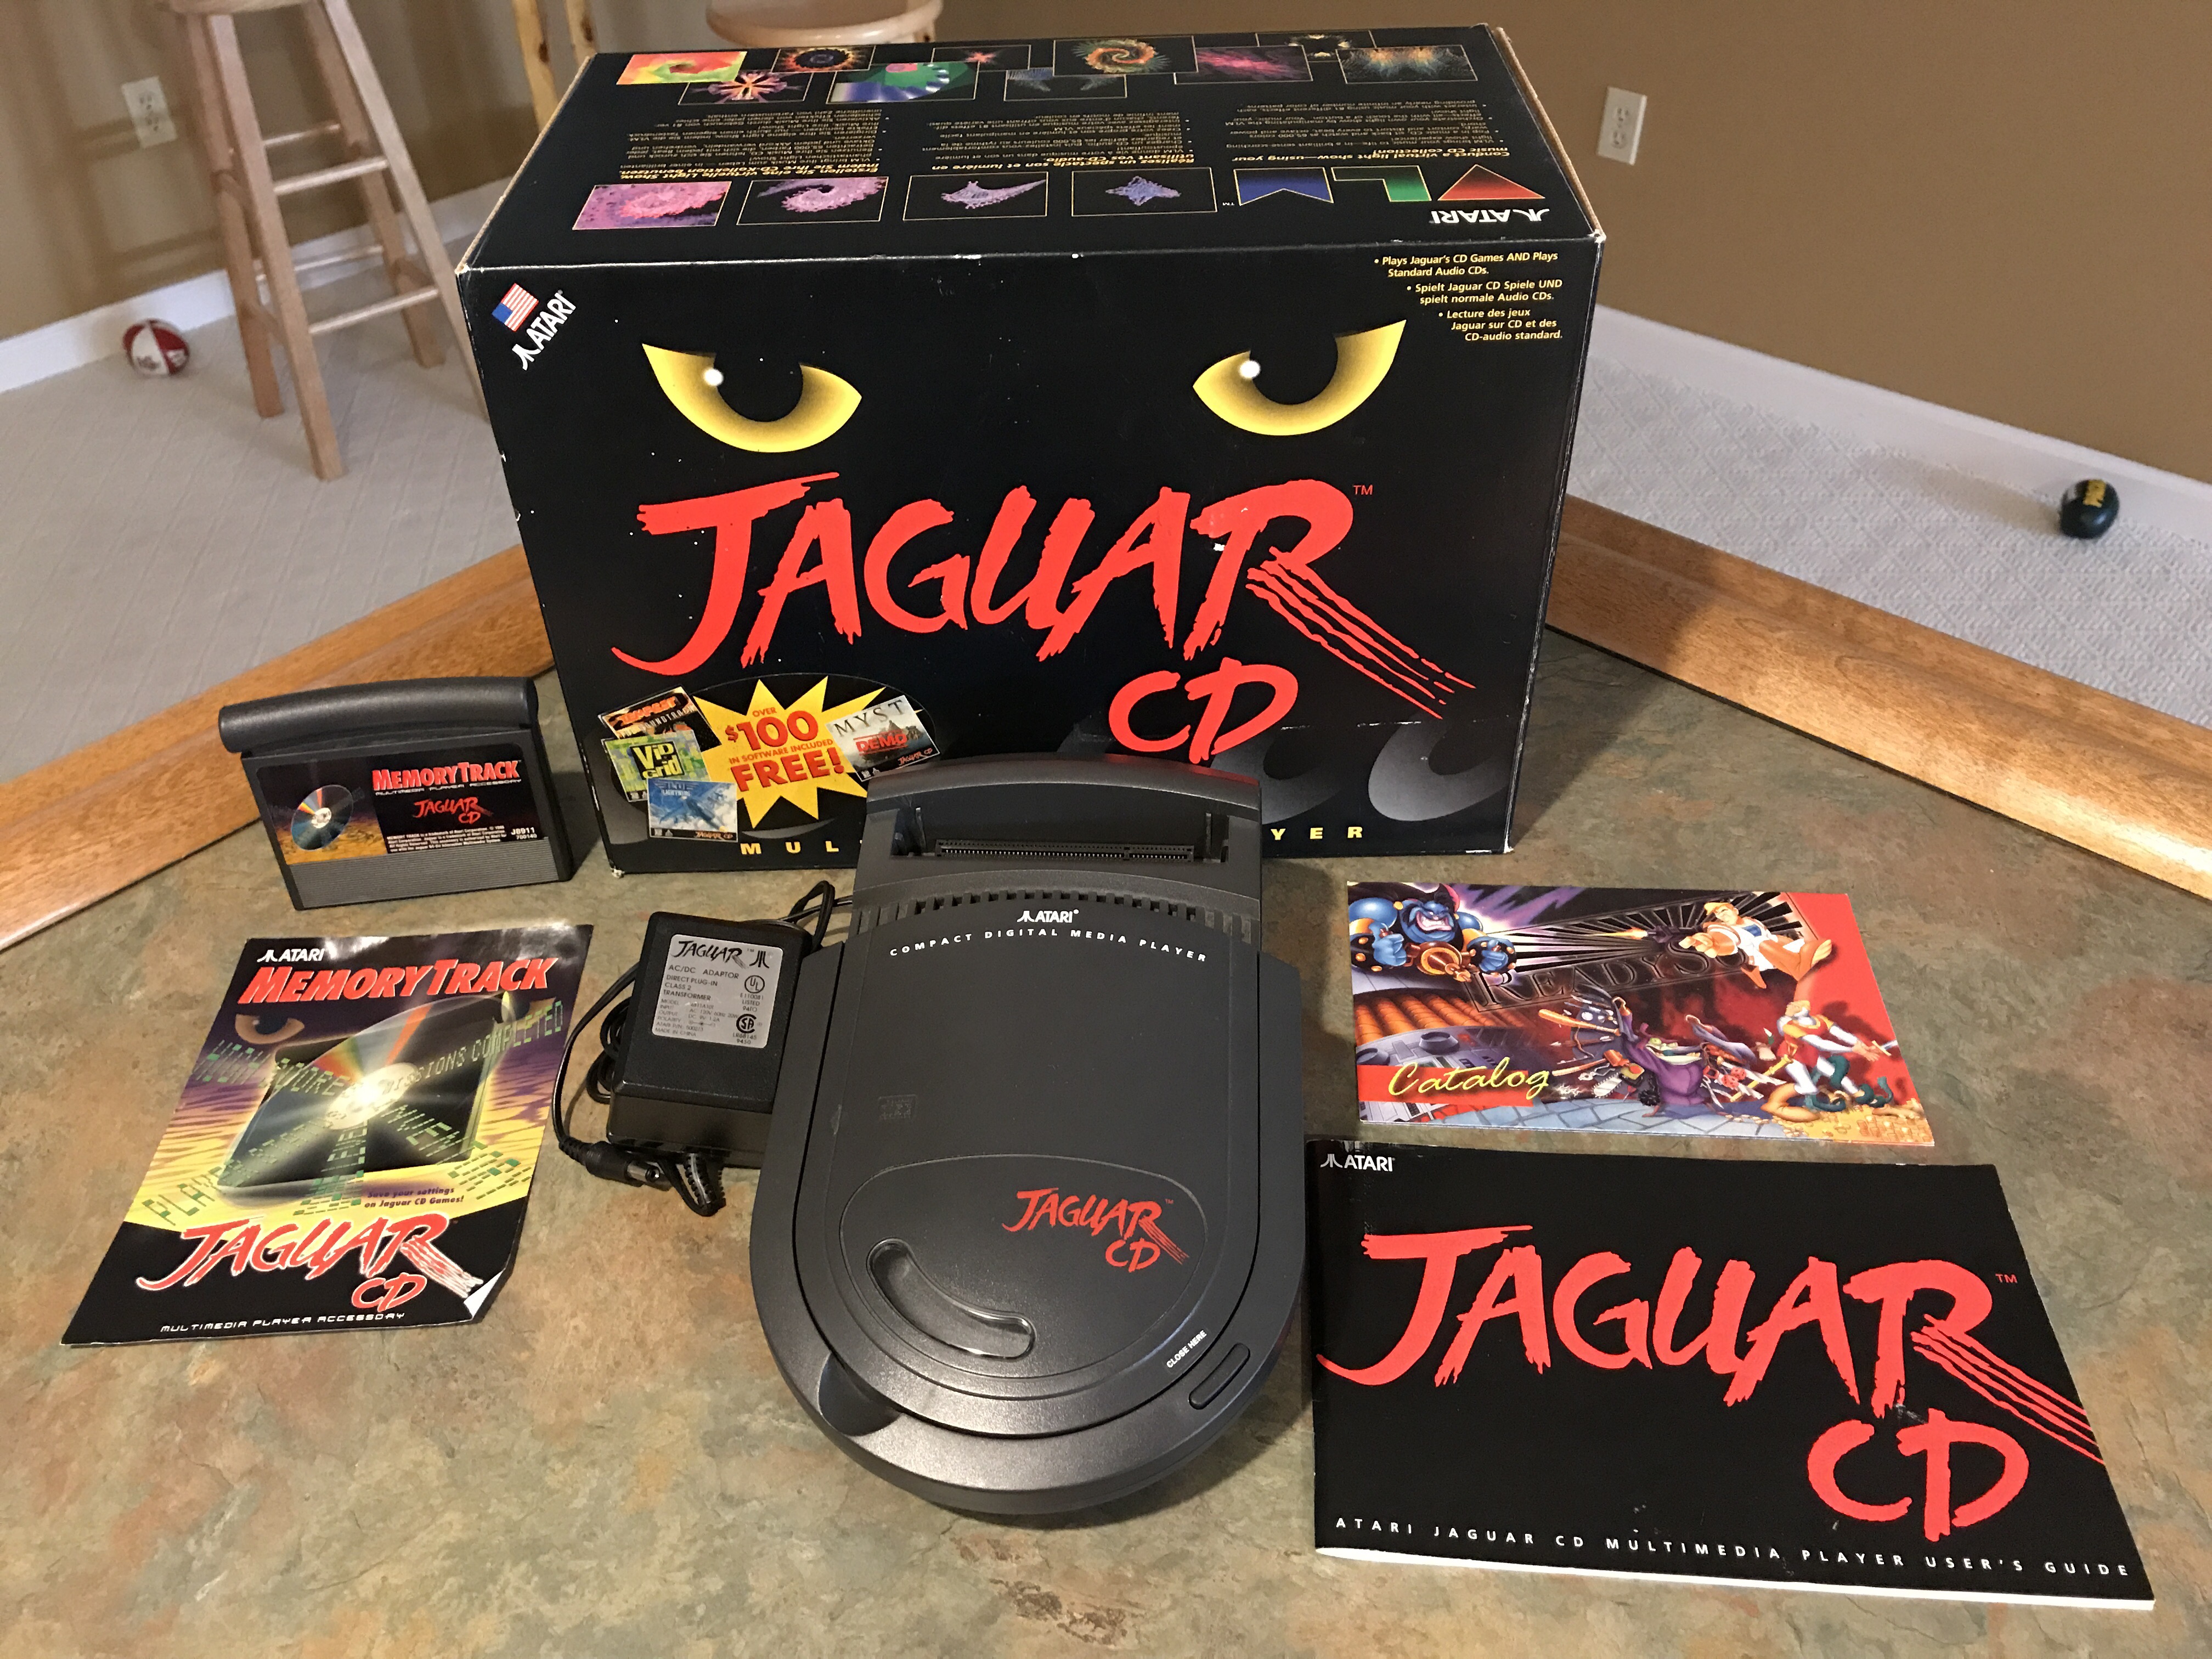 Atari jaguar. Atari Jaguar CD. Atari Jaguar картриджи. Atari Jaguar игры. Atari Jaguar Россия.